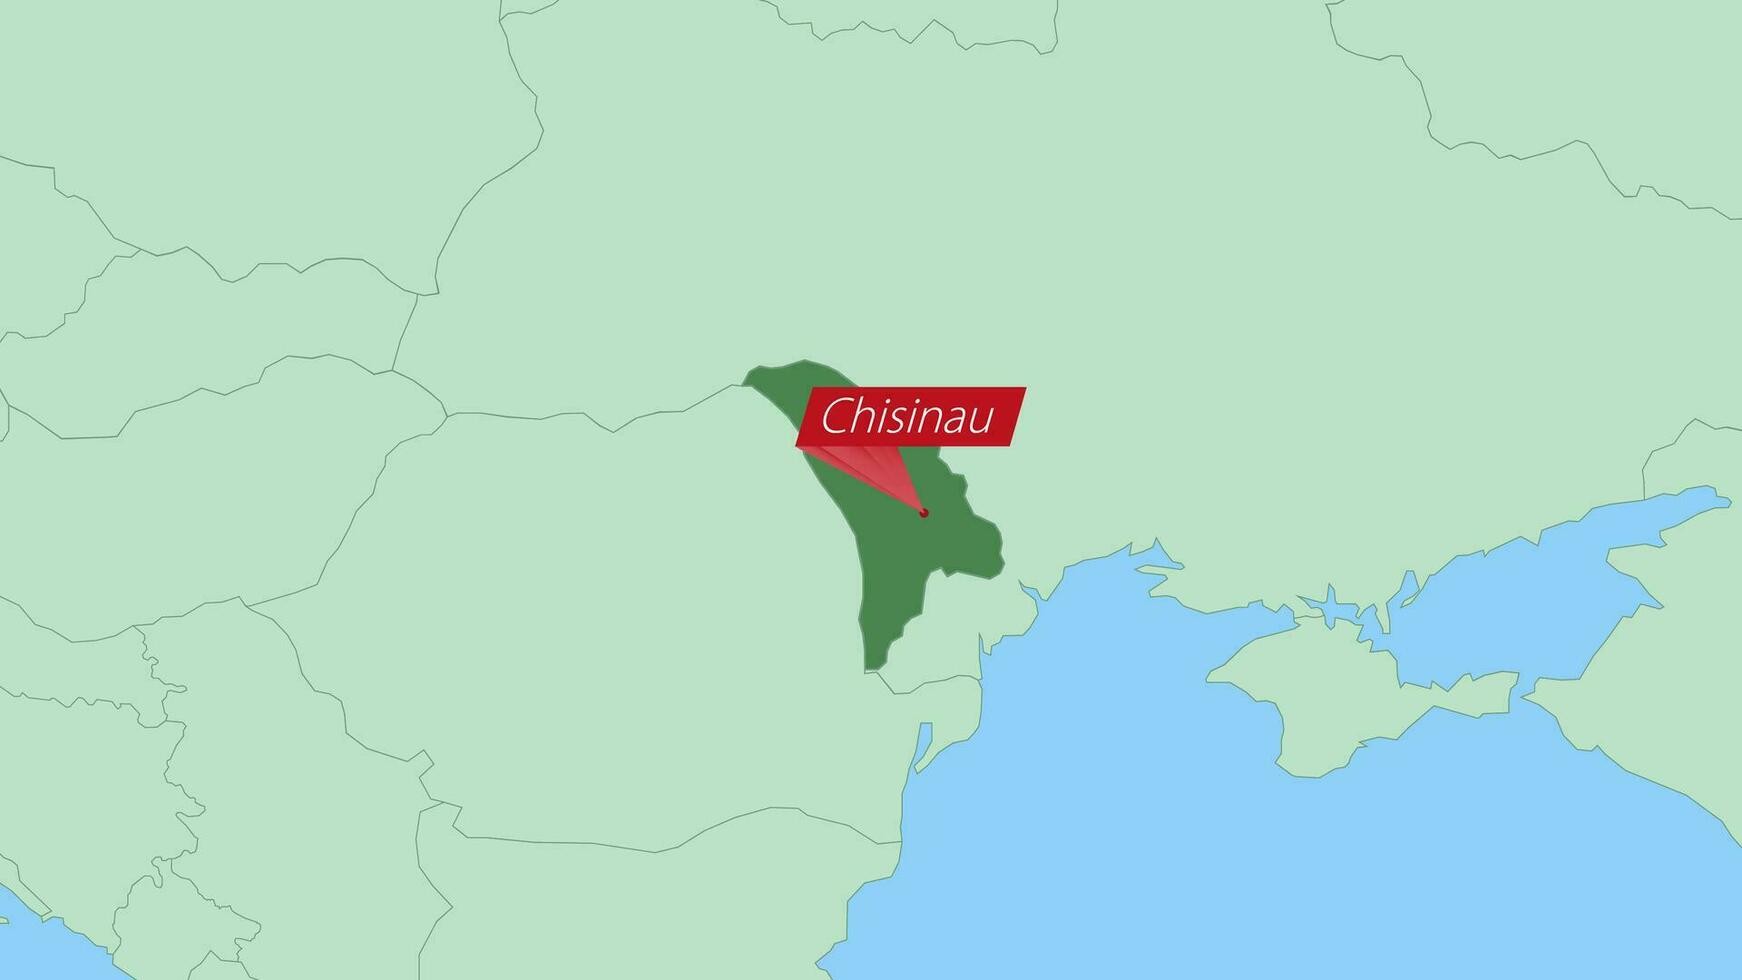 kaart van Moldavië met pin van land hoofdstad. vector